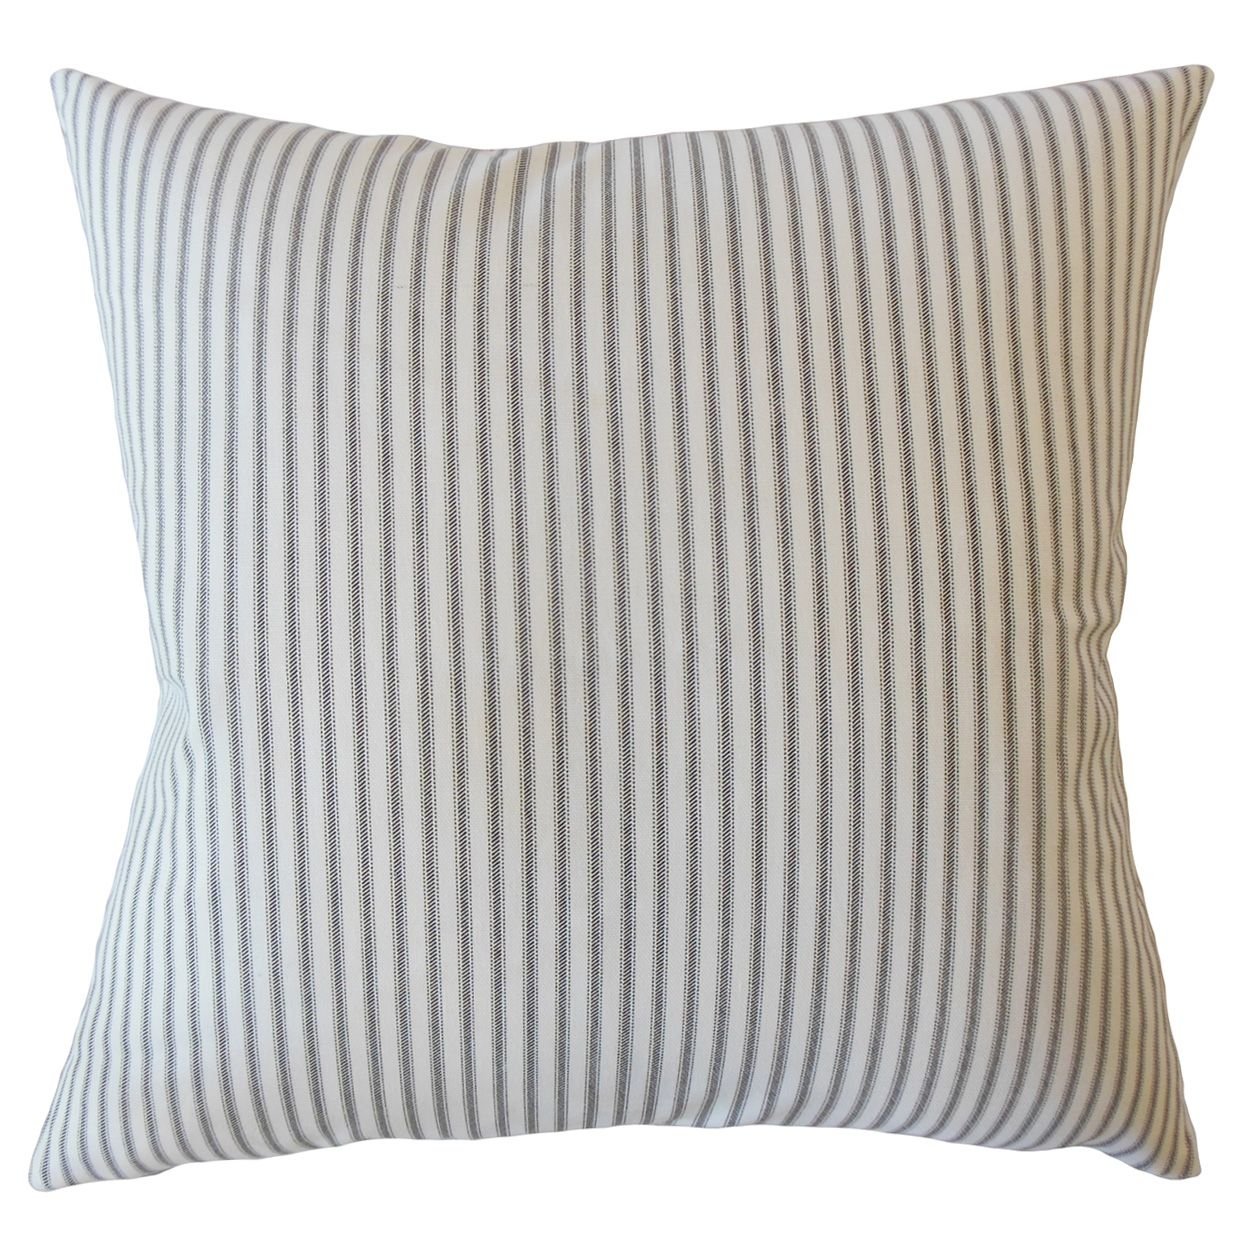 Ticking Stripe Pillow, Black, 18" x 18" - Image 0